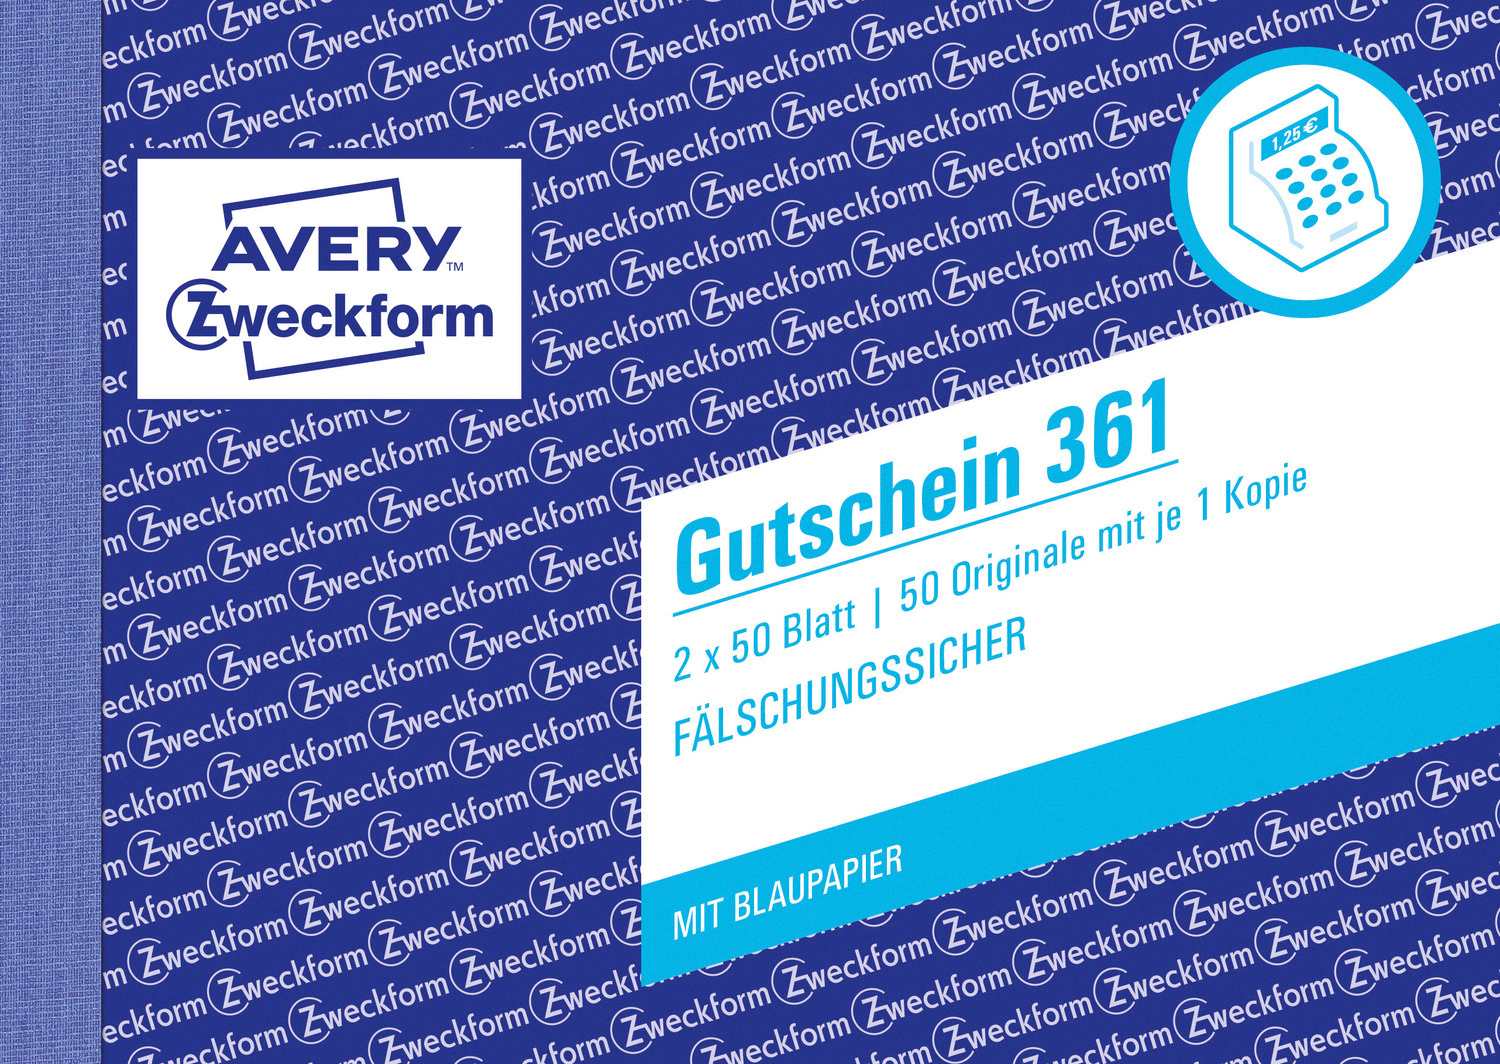 A6 ZWECKFORM AVERY weiß/gelb 361 Querformat Gutschein Pack, 2er DIN